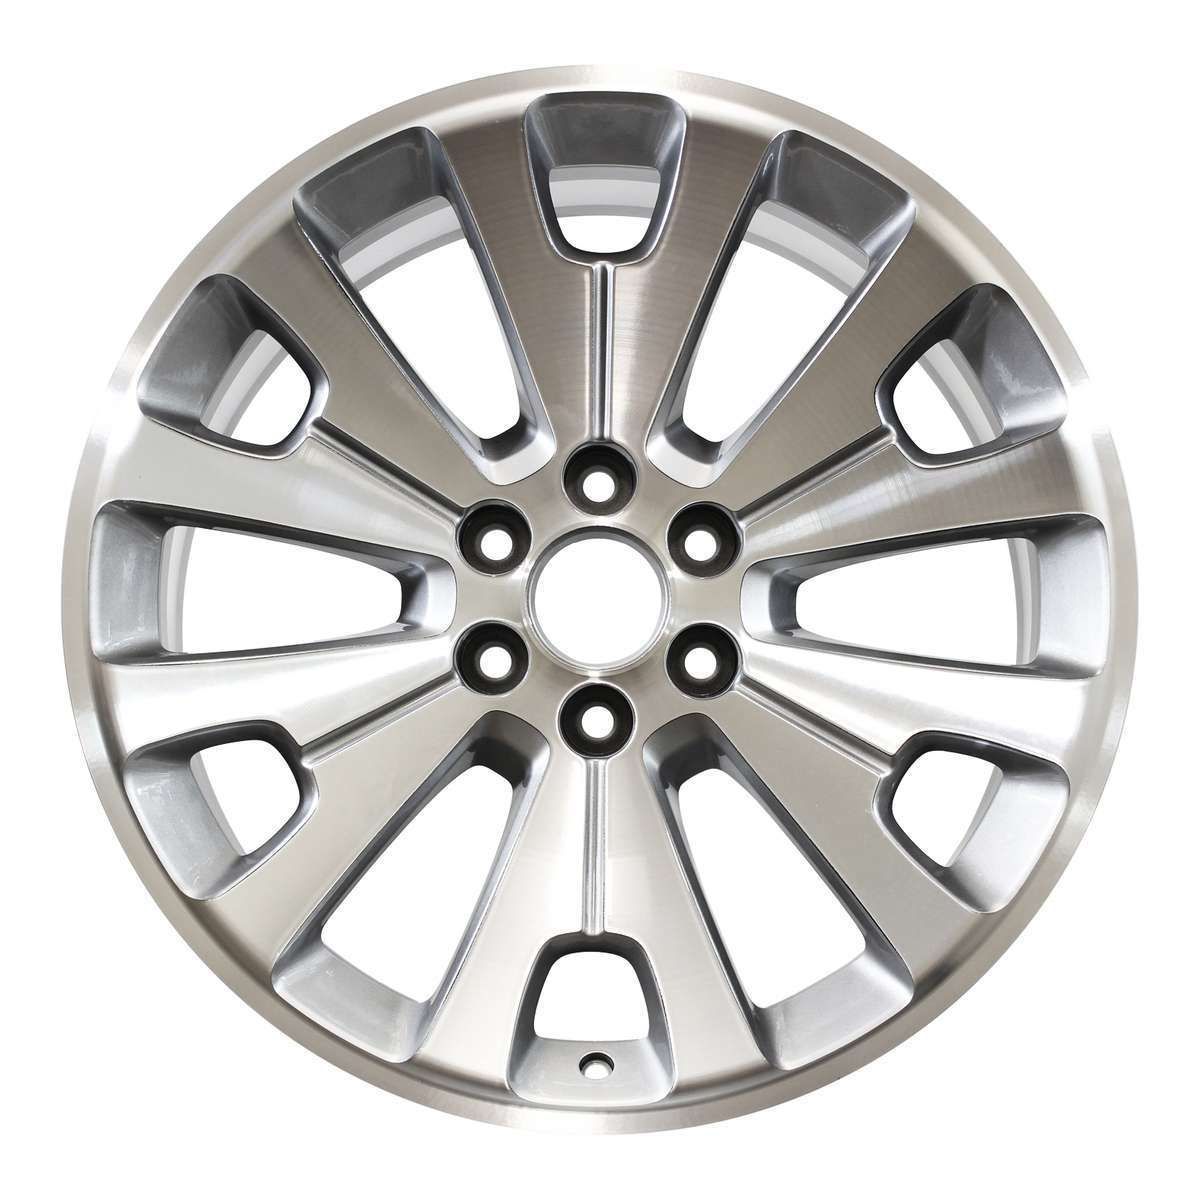 2021 GMC Yukon XL 22" OEM Wheel Rim W5663MS